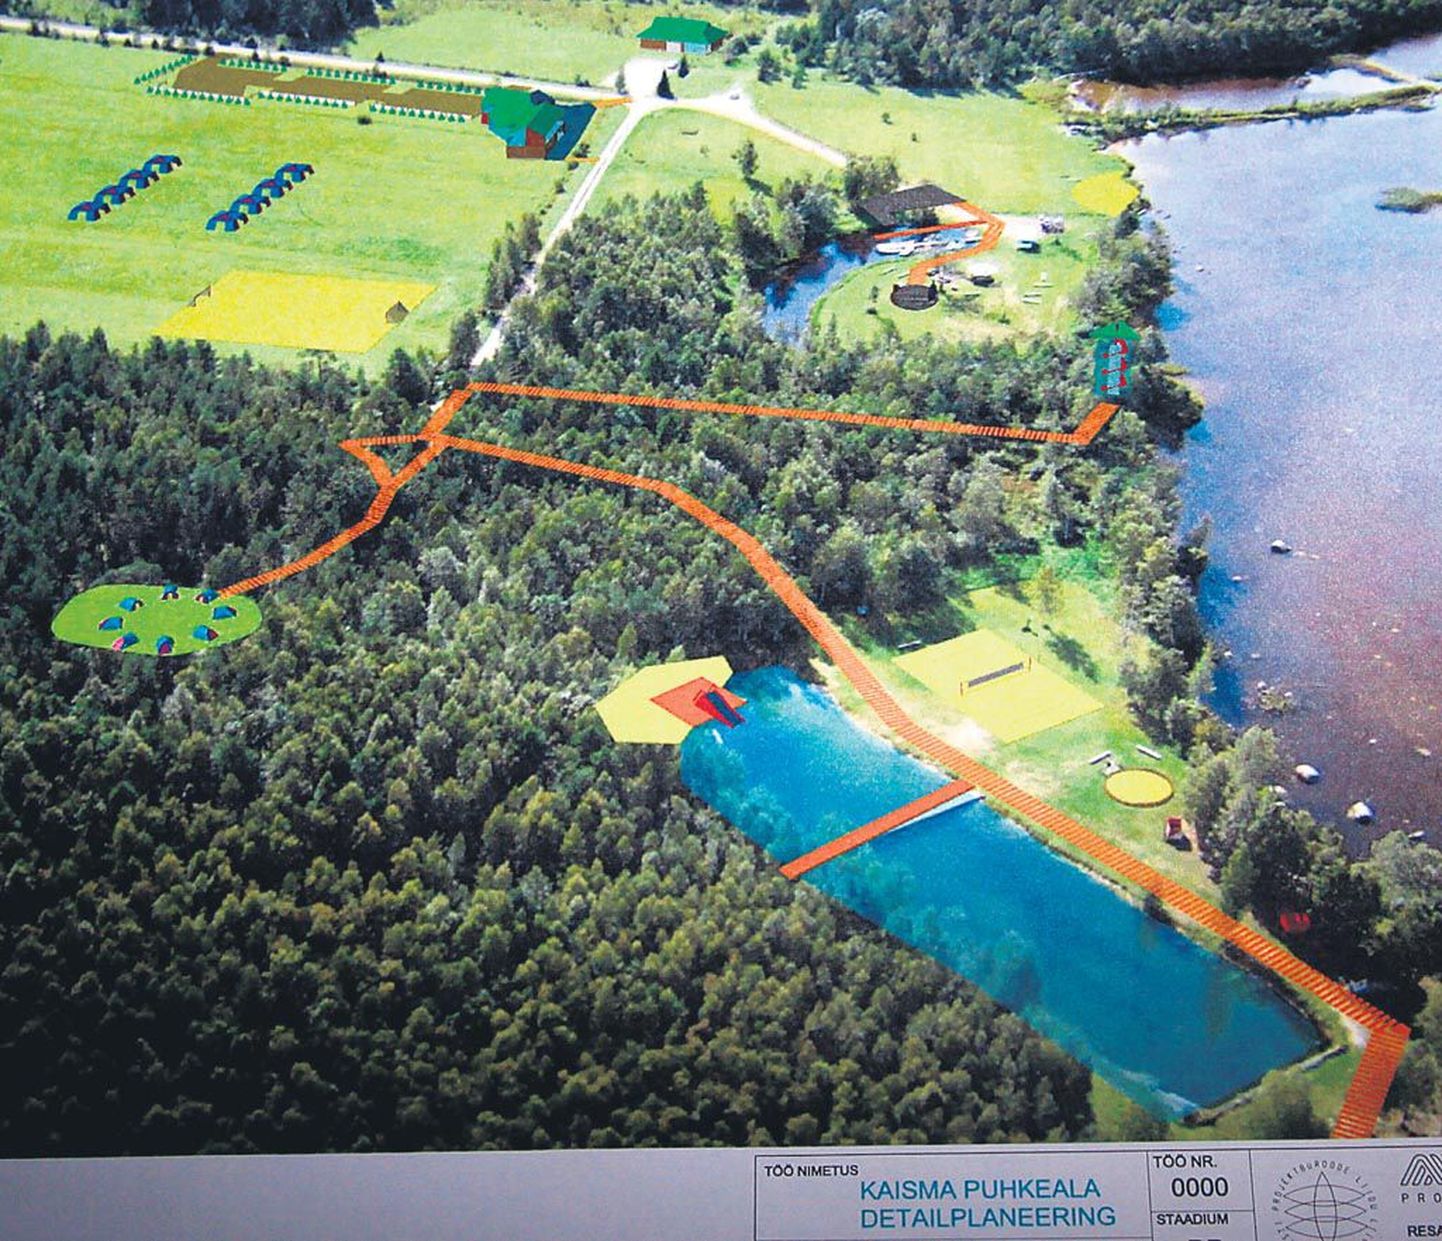 Detailplaneeringu järgi korrastataks järve ääres paatide kanal ja ujumiskoht, rajataks spordi- ja mänguväljakud, ehitataks küün-kontserdipaik, infopunktiga administratiivhoone ja vaatetorn.